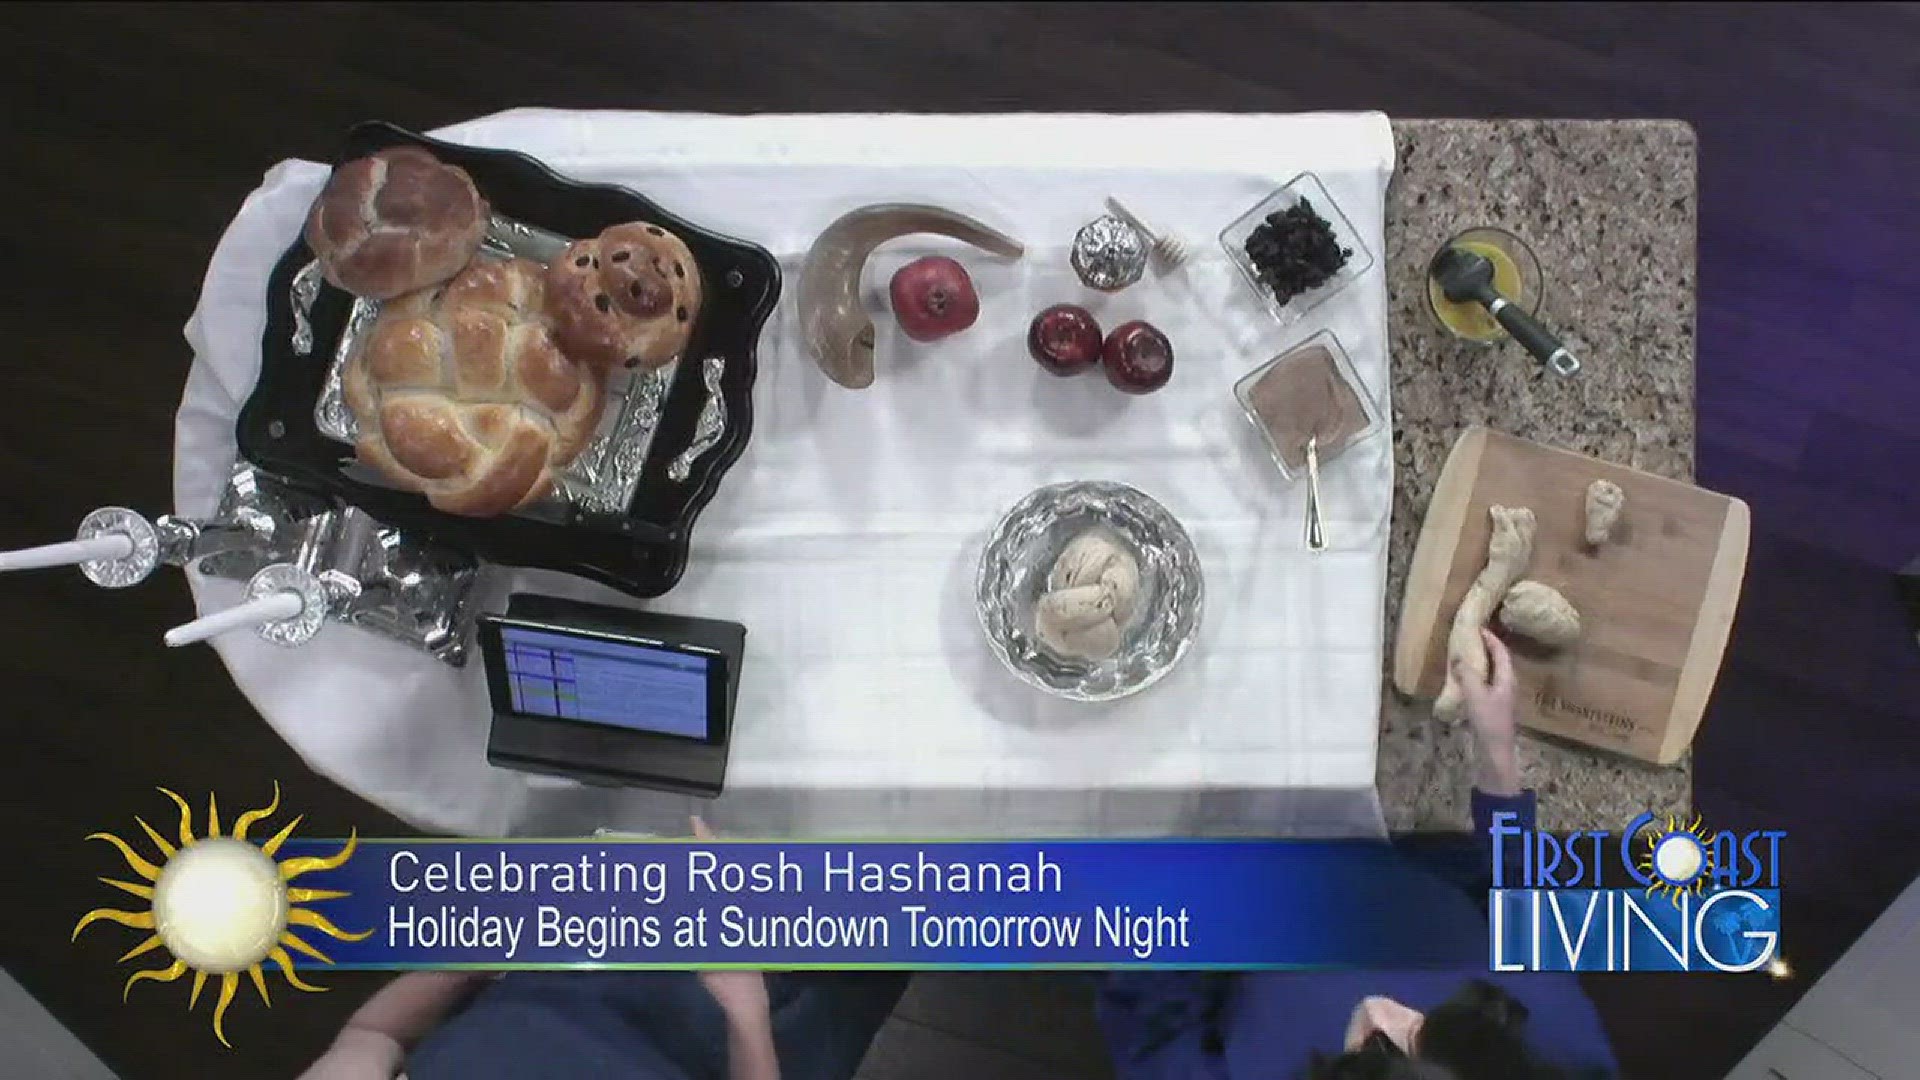 Celebrating Rosh Hashanah